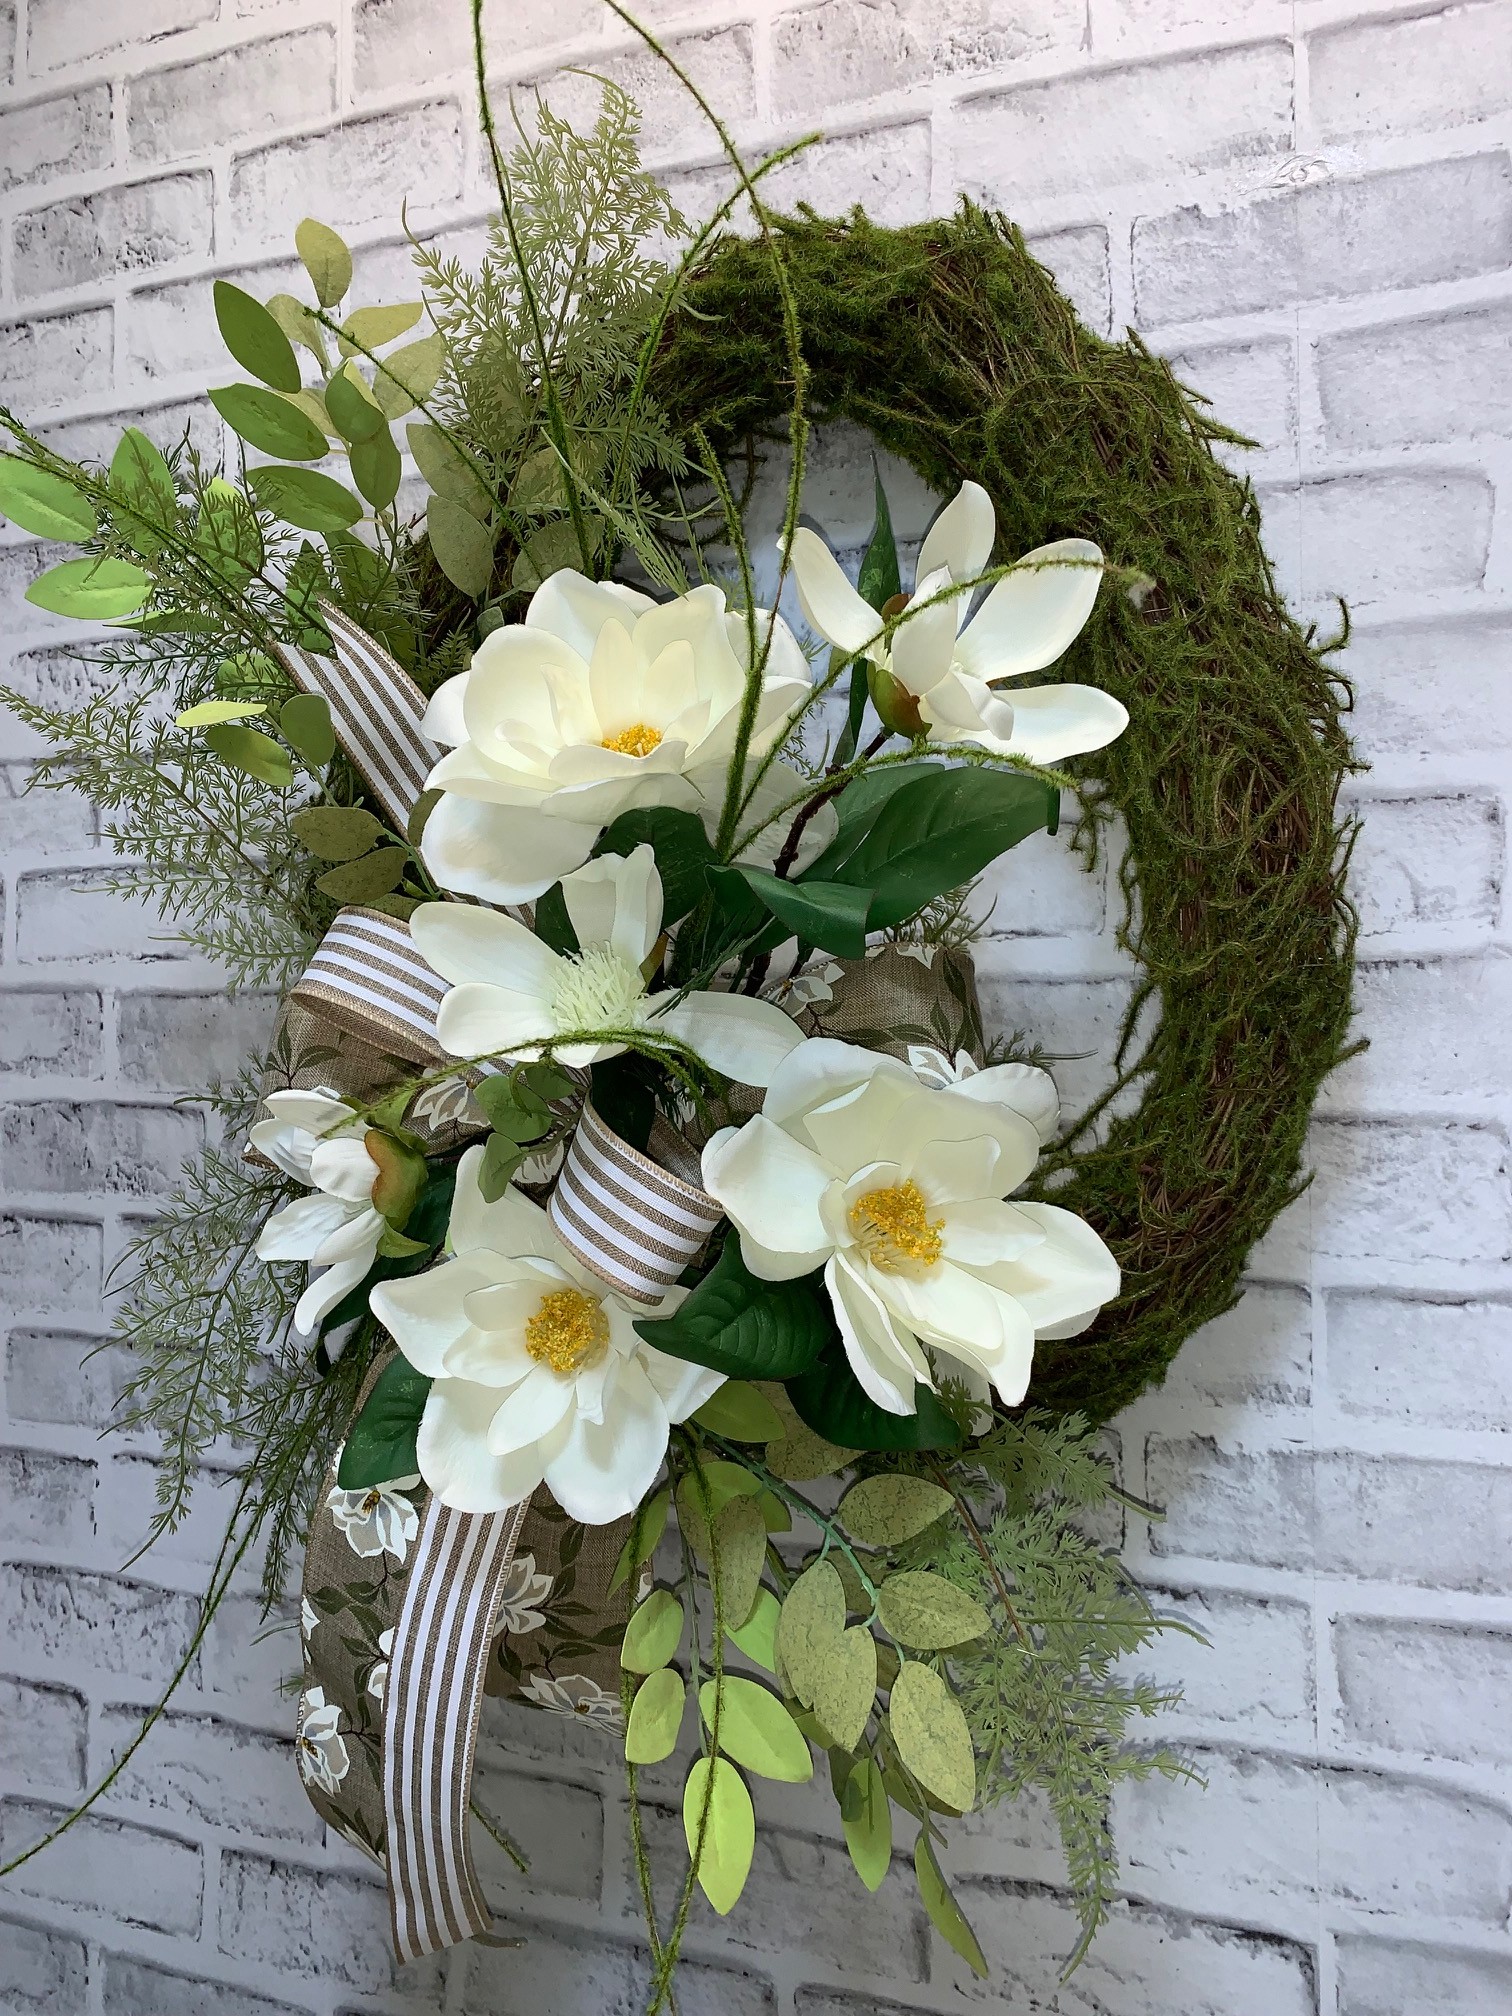 Magnolia Cross Wreath,Memorial Wreath,Sympathy Wreath,Grapevine Cross Wreath,Religious Wreath,Magnolia Easter Cross Wreath,Everyday magnolia